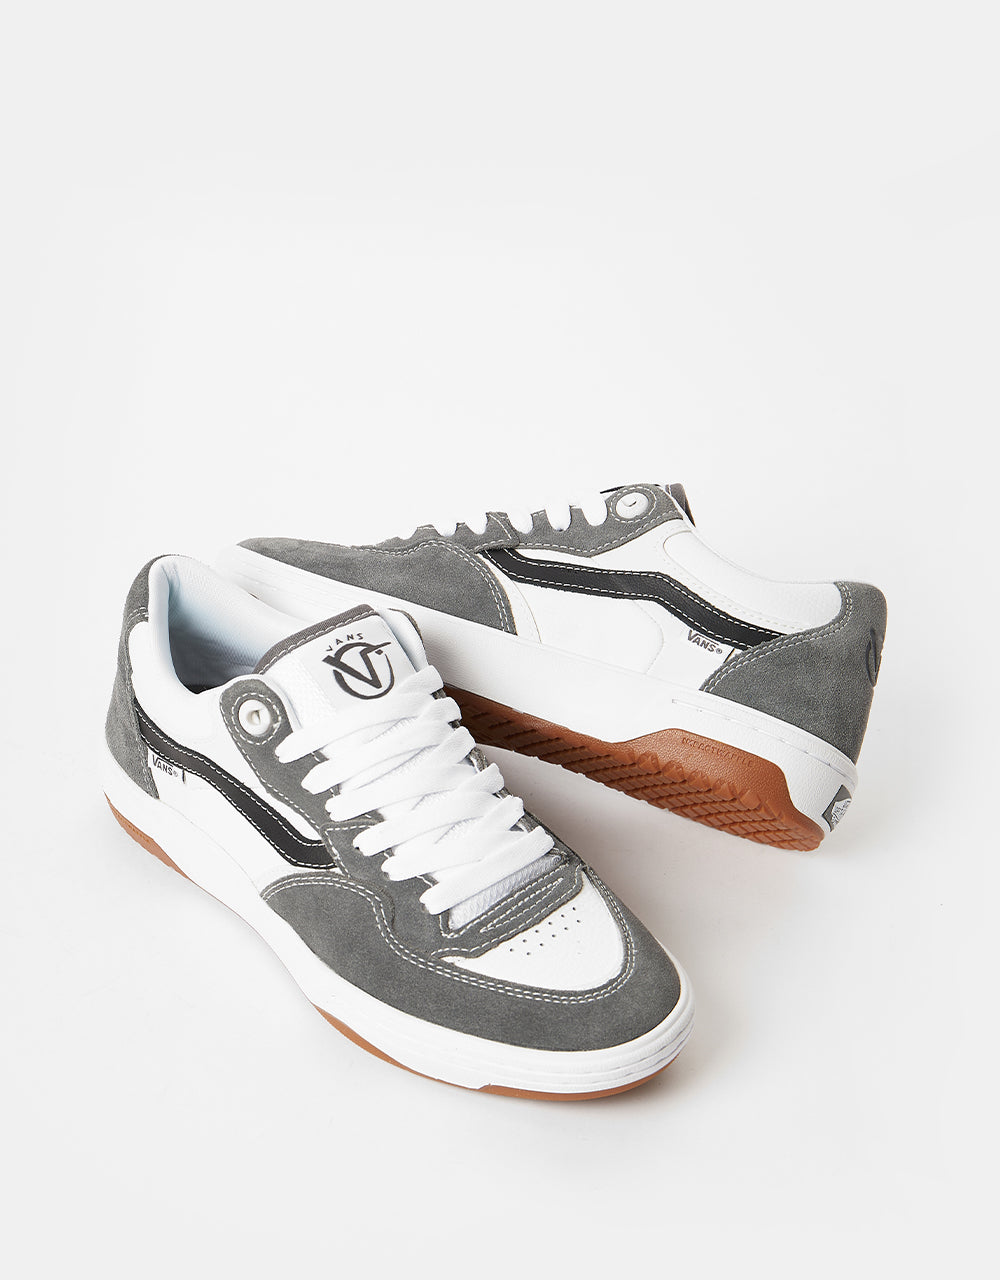 Vans Rowan II Skate Shoes -  Grey/White